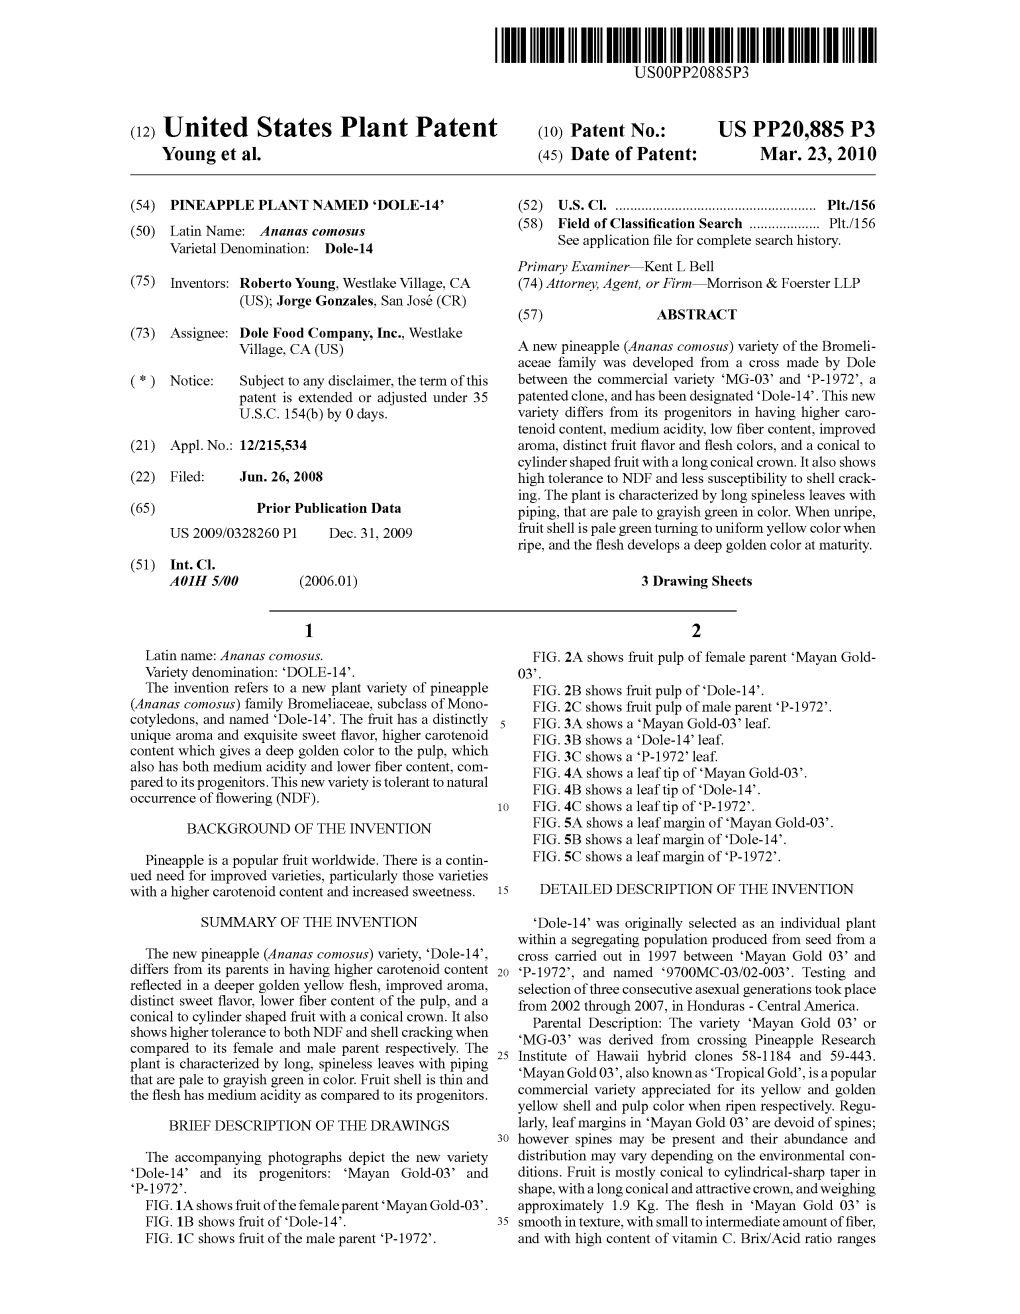 (12) United States Plant Patent (10) Patent No.: US PP20,885 P3 Young Et Al